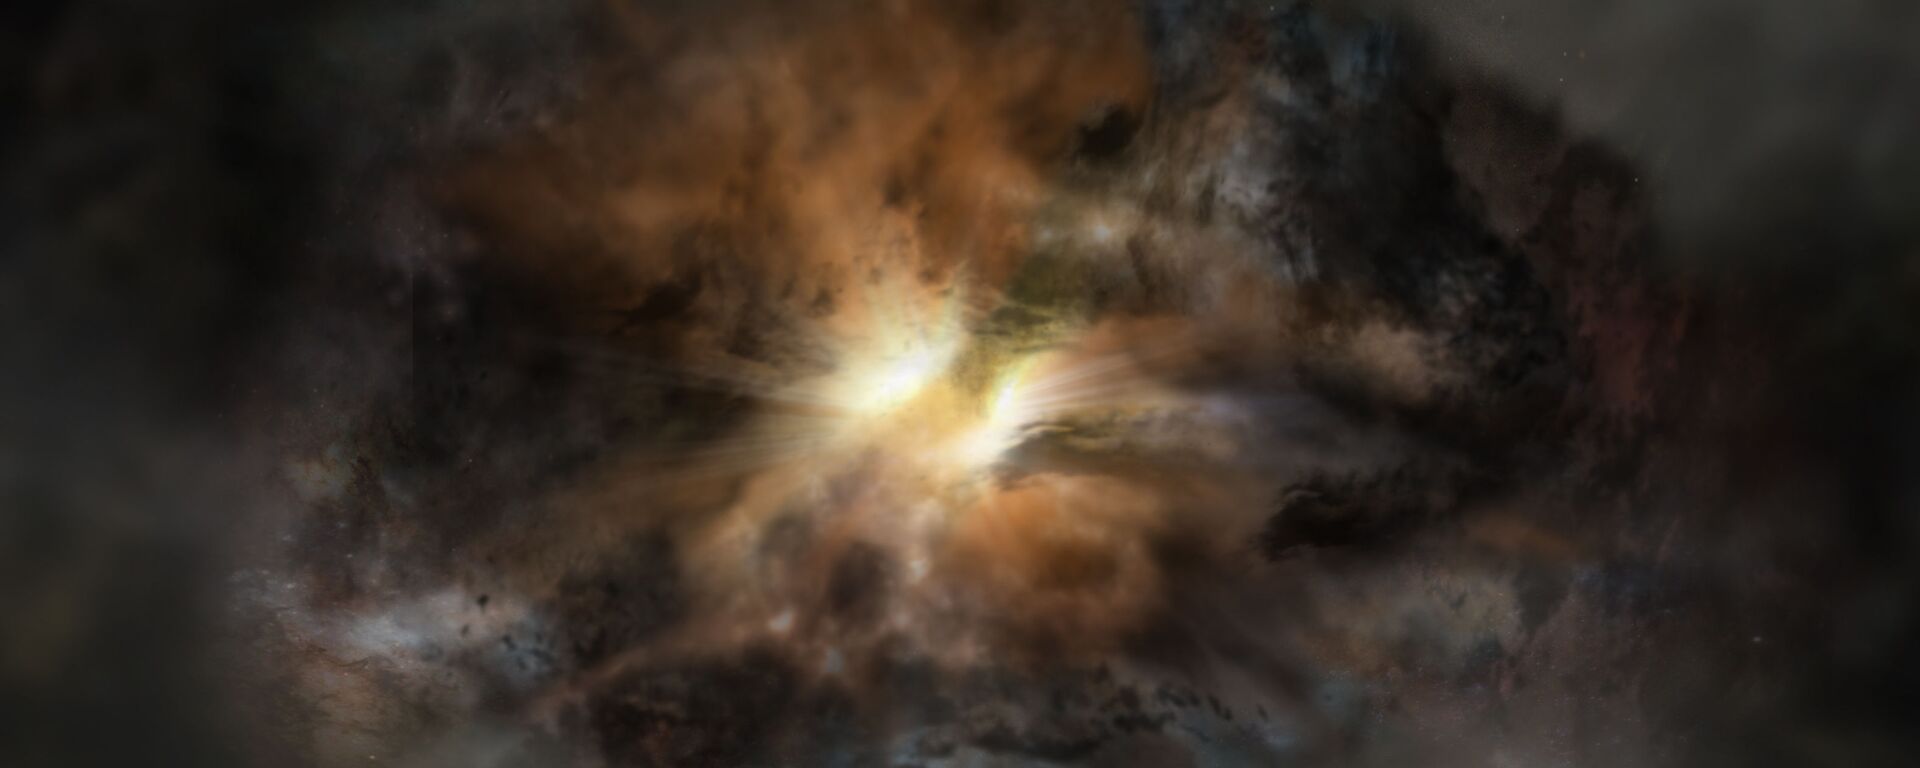 رسم توضيحي لفنان للمجرة الأكثر سطوعاً في الكون واسمها W2246-0526. وتشير البحوث العلمية الأخيرة إلى وجود غازات مضطربة في هذه المجرة، وهي الأولى من نوعها. - سبوتنيك عربي, 1920, 23.02.2023